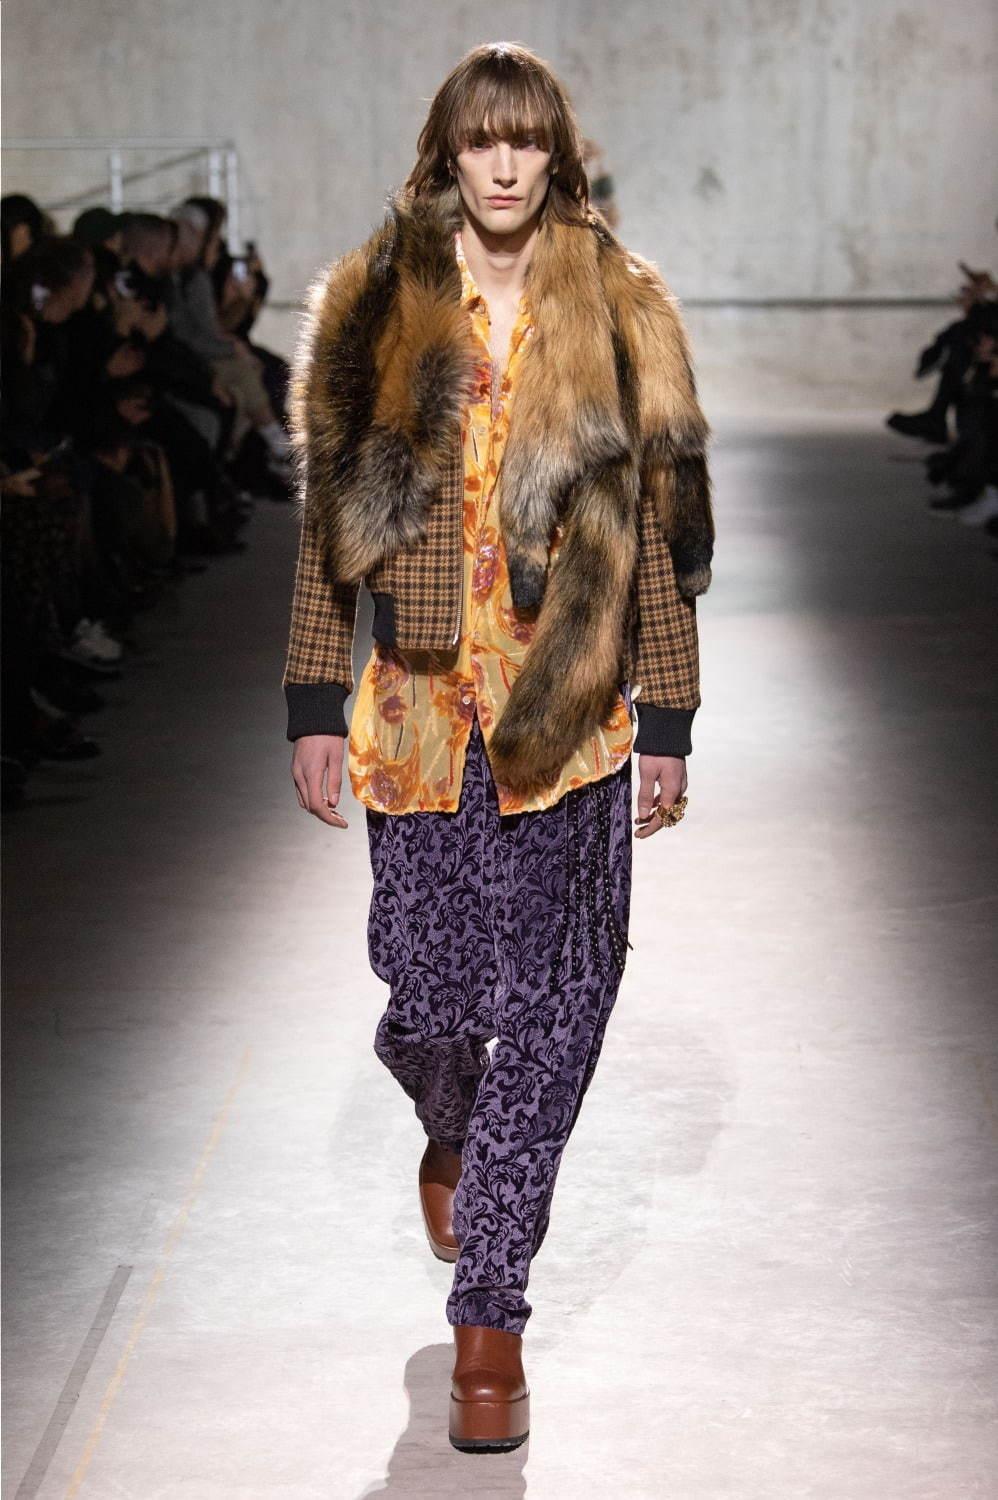 ドリス ヴァン ノッテン 2020年秋冬メンズコレクション - 直感的に楽しむ自由なファッション コピー